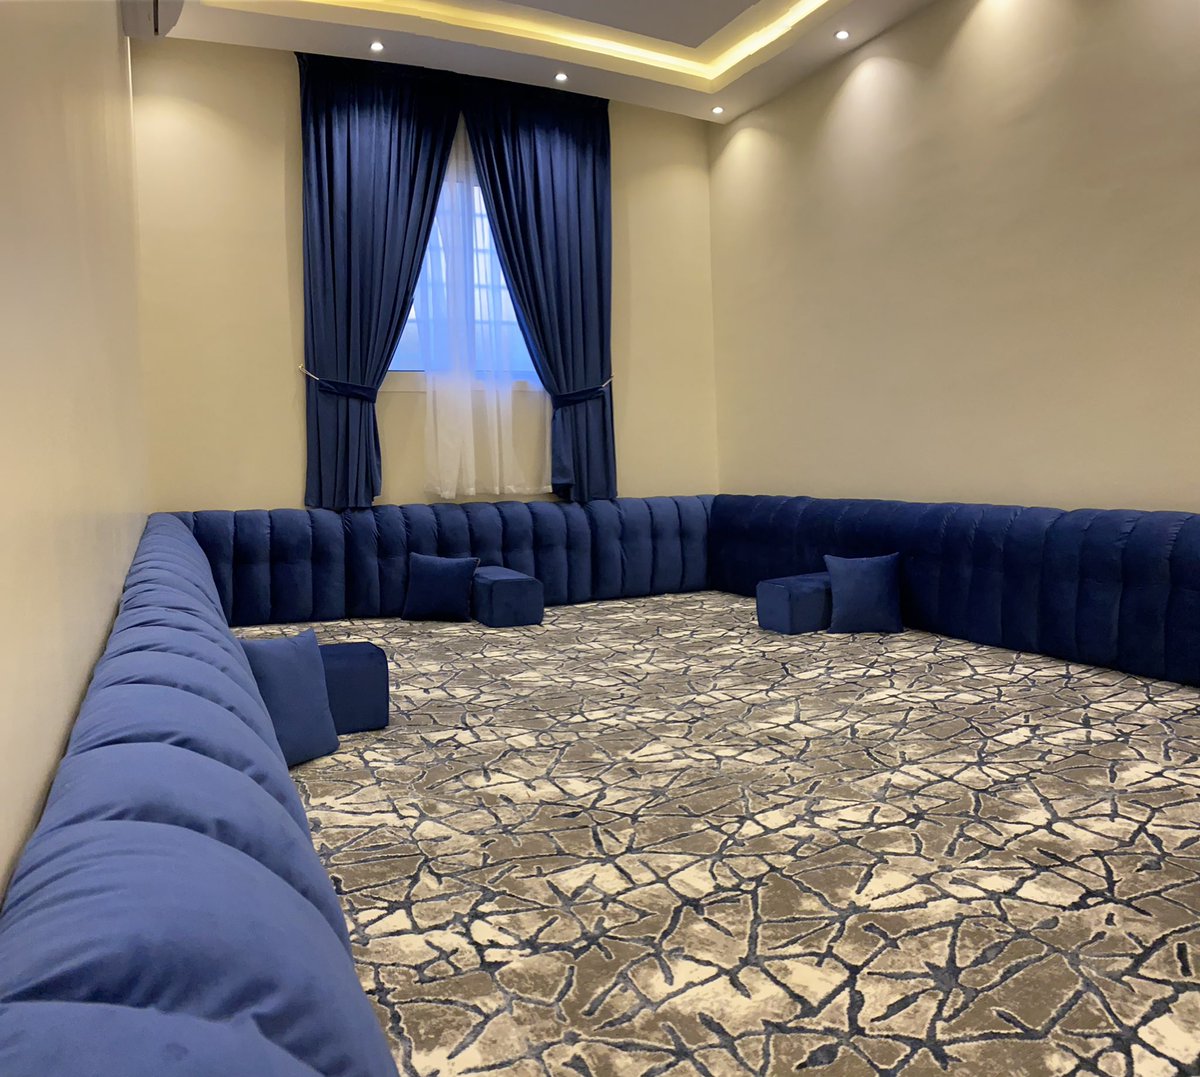 غرف عزاب شرق الرياض , غرف نوم شبابية 2021 - ازاي